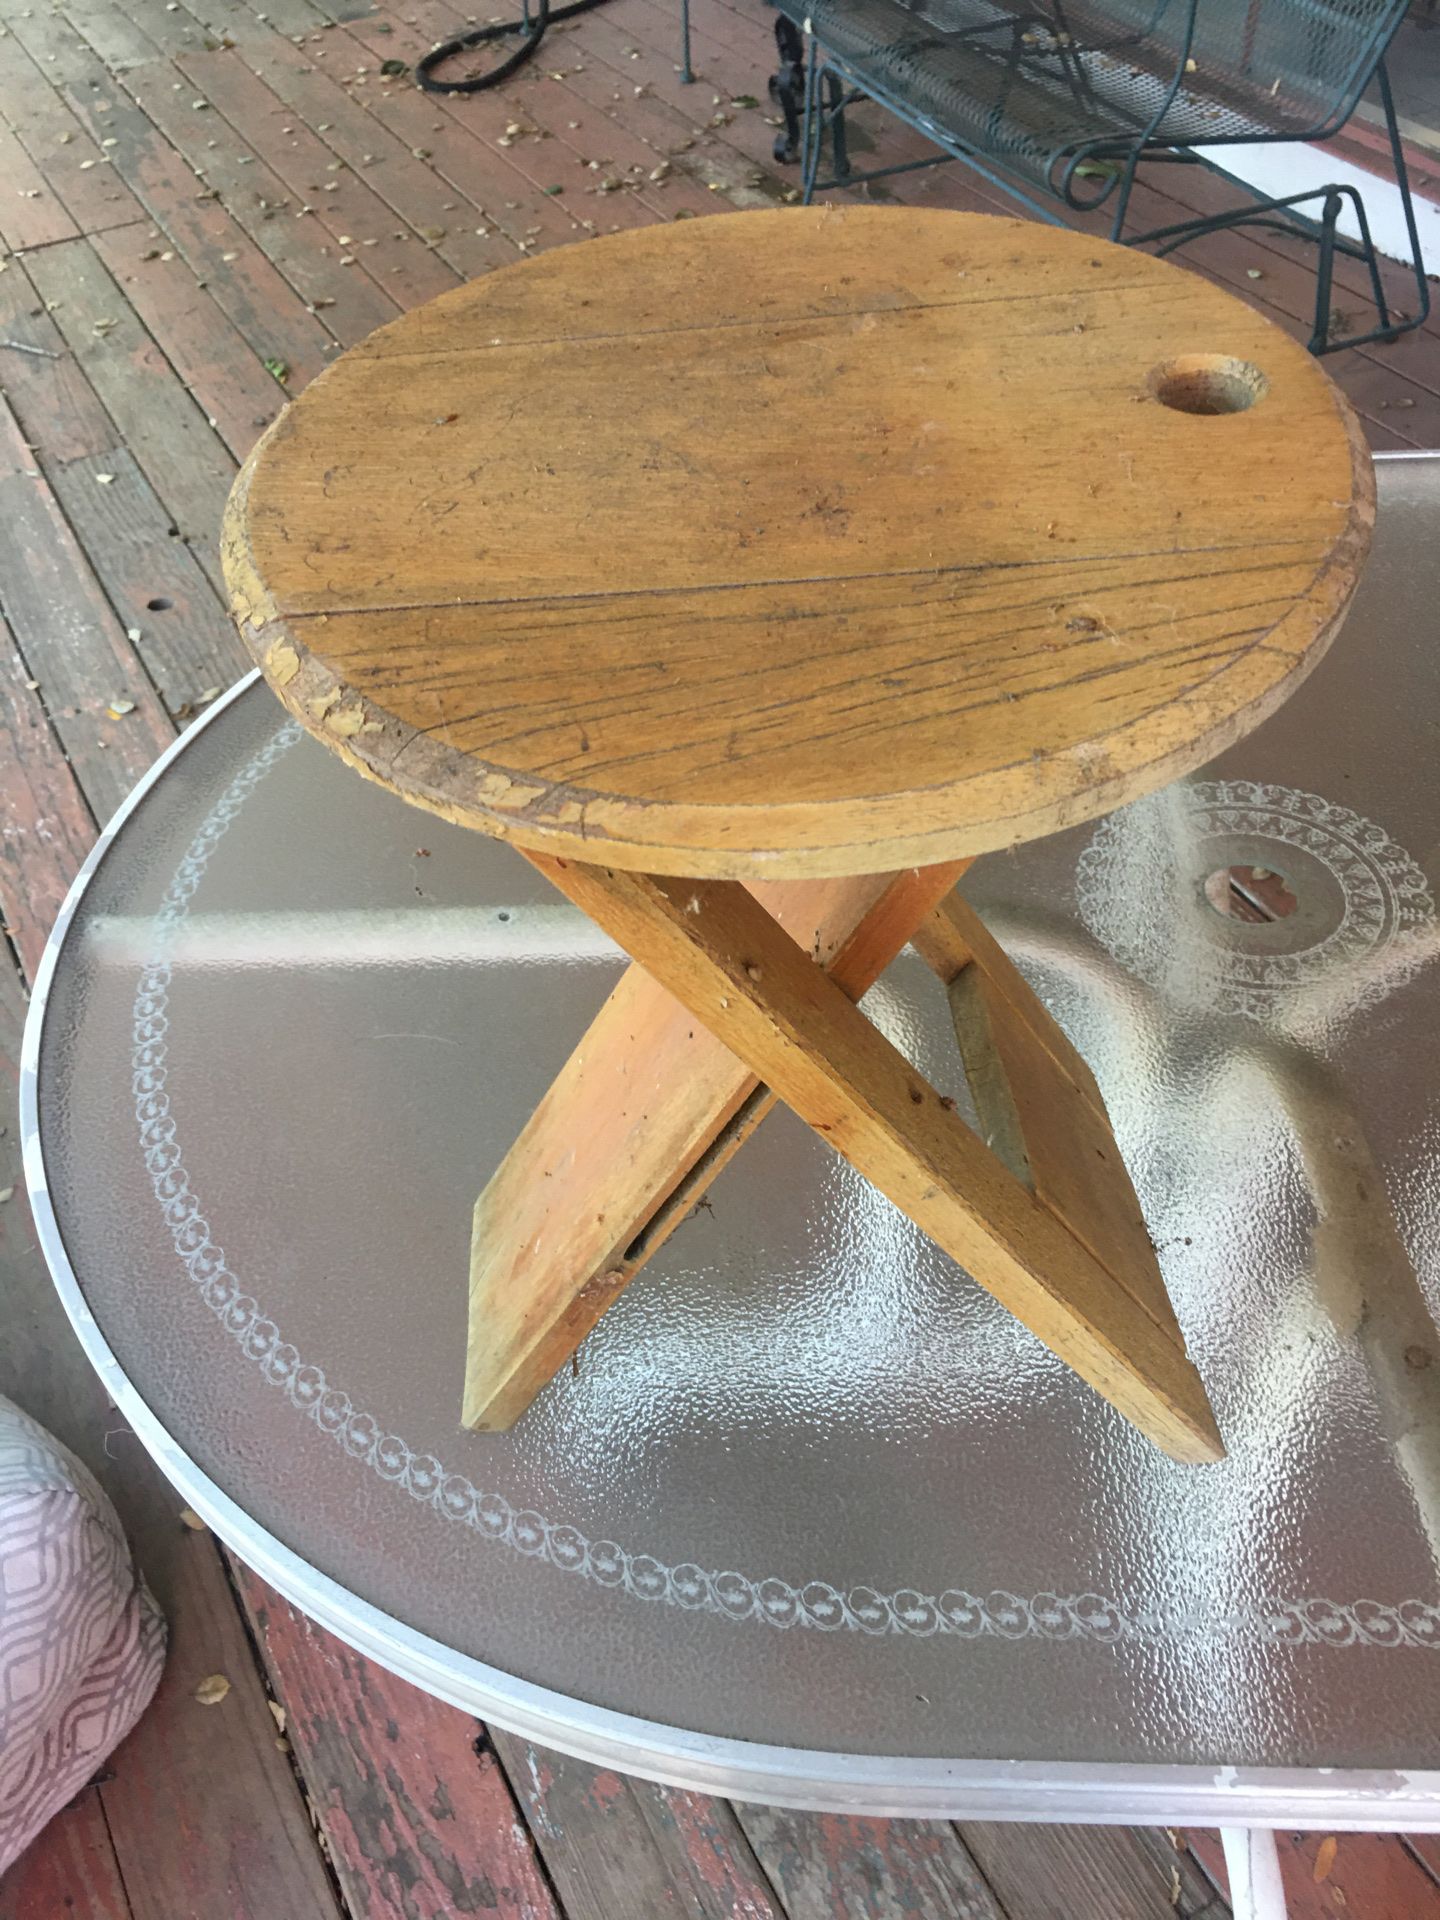 2 Free stools/mini table, needs restoration